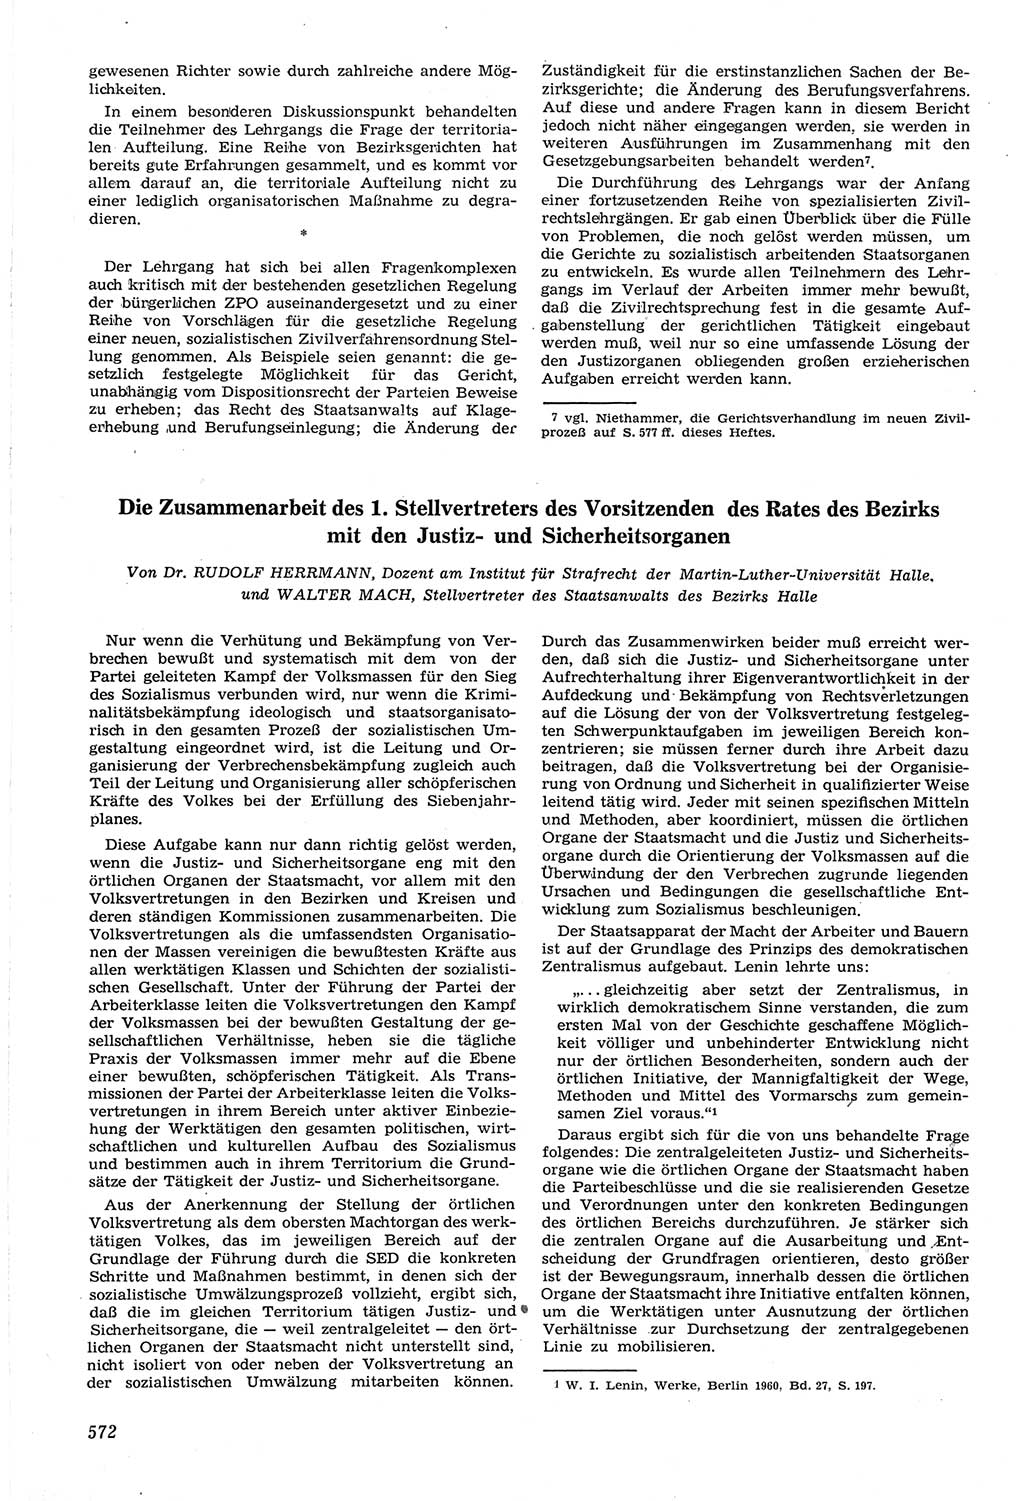 Neue Justiz (NJ), Zeitschrift für Recht und Rechtswissenschaft [Deutsche Demokratische Republik (DDR)], 14. Jahrgang 1960, Seite 572 (NJ DDR 1960, S. 572)